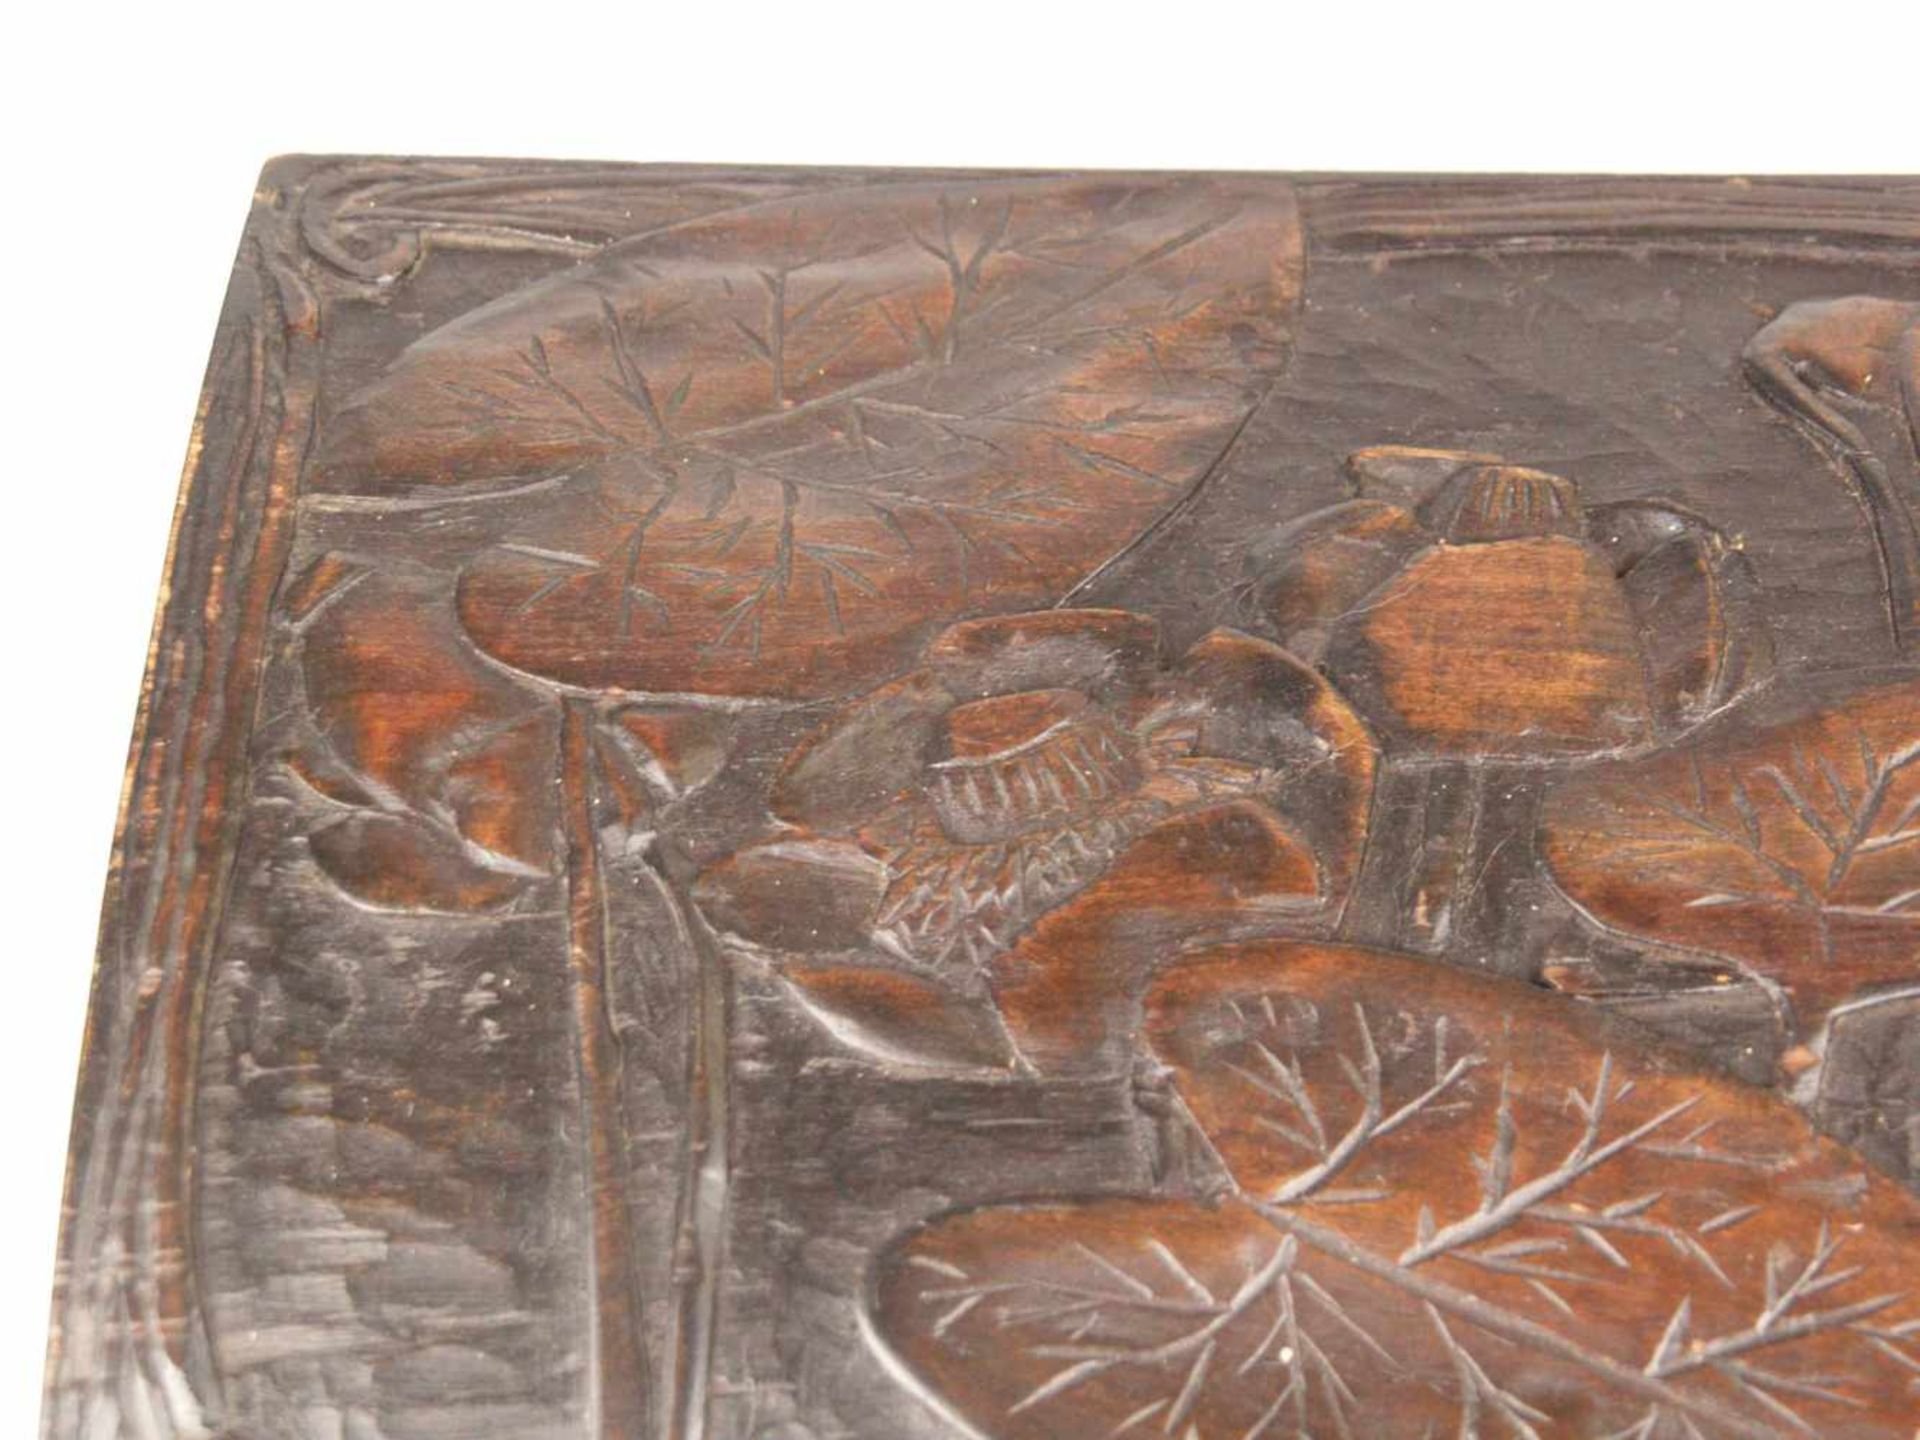 Holzkasten - rechteckiger Korpus, außen braun bemalt, geschnitzter Lotosblumen Dekor, - Bild 3 aus 10